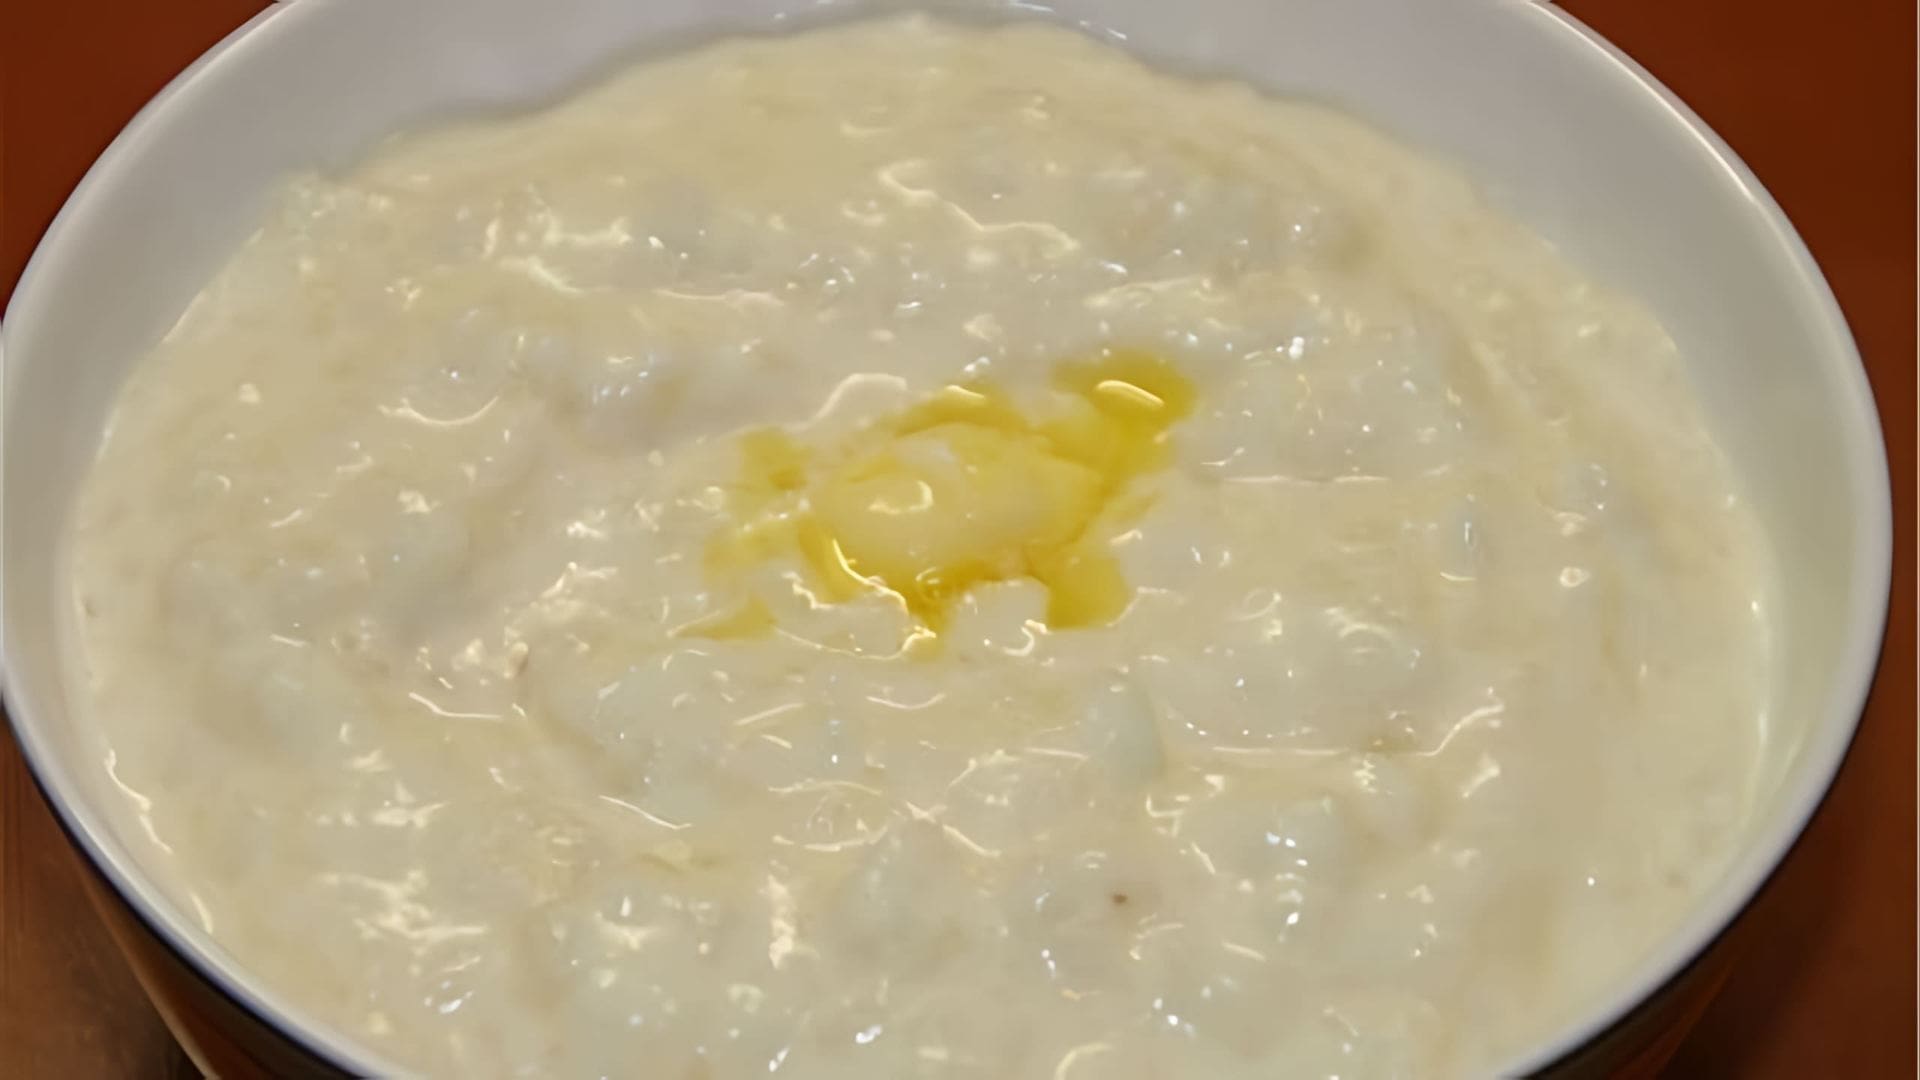 В этом видео демонстрируется процесс приготовления рисовой молочной каши